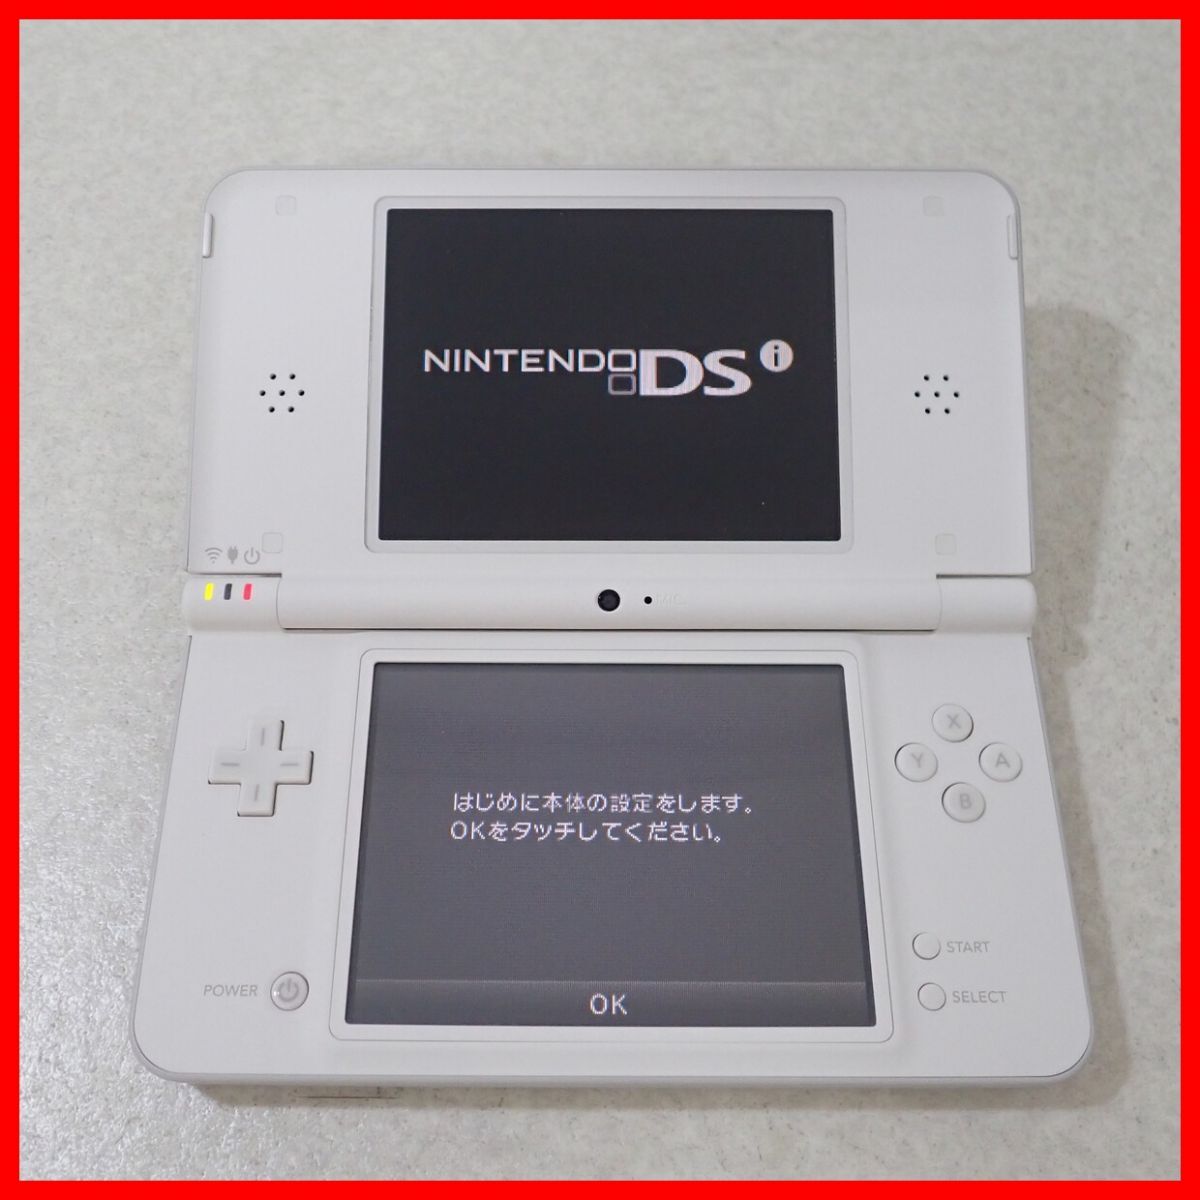  рабочий товар Nintendo DSiLL корпус UTL-001 натуральный белый nintendo Nintendo коробка мнение есть [10